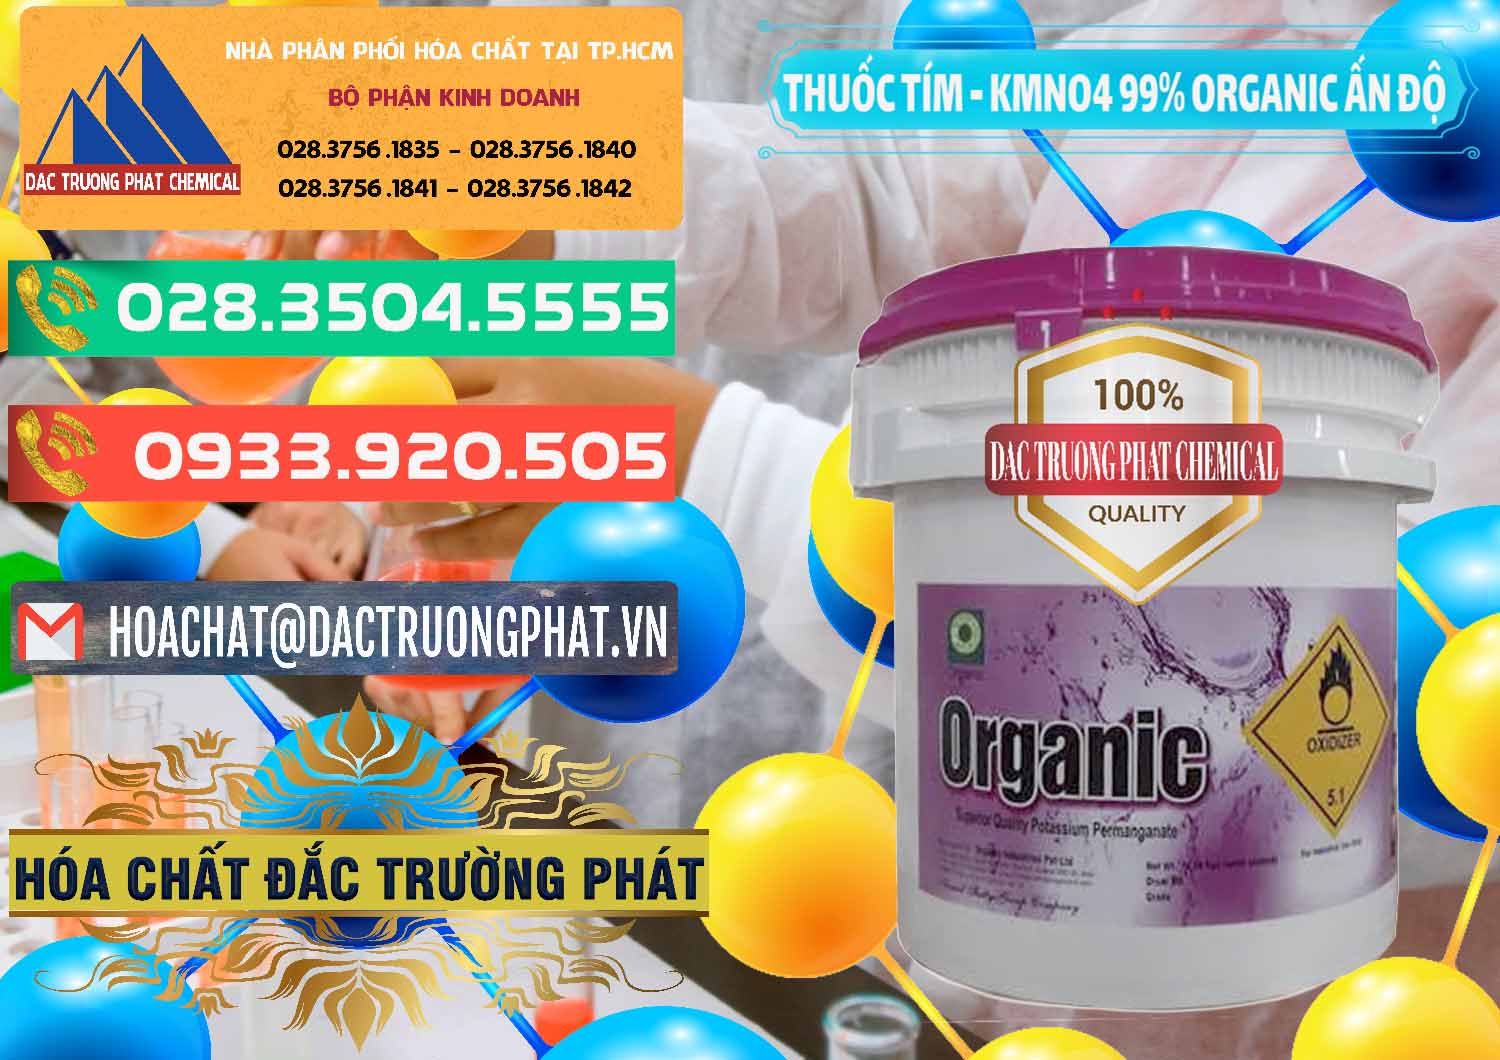 Nơi phân phối & bán Thuốc Tím - KMNO4 99% Organic Ấn Độ India - 0216 - Công ty cung cấp _ phân phối hóa chất tại TP.HCM - congtyhoachat.com.vn